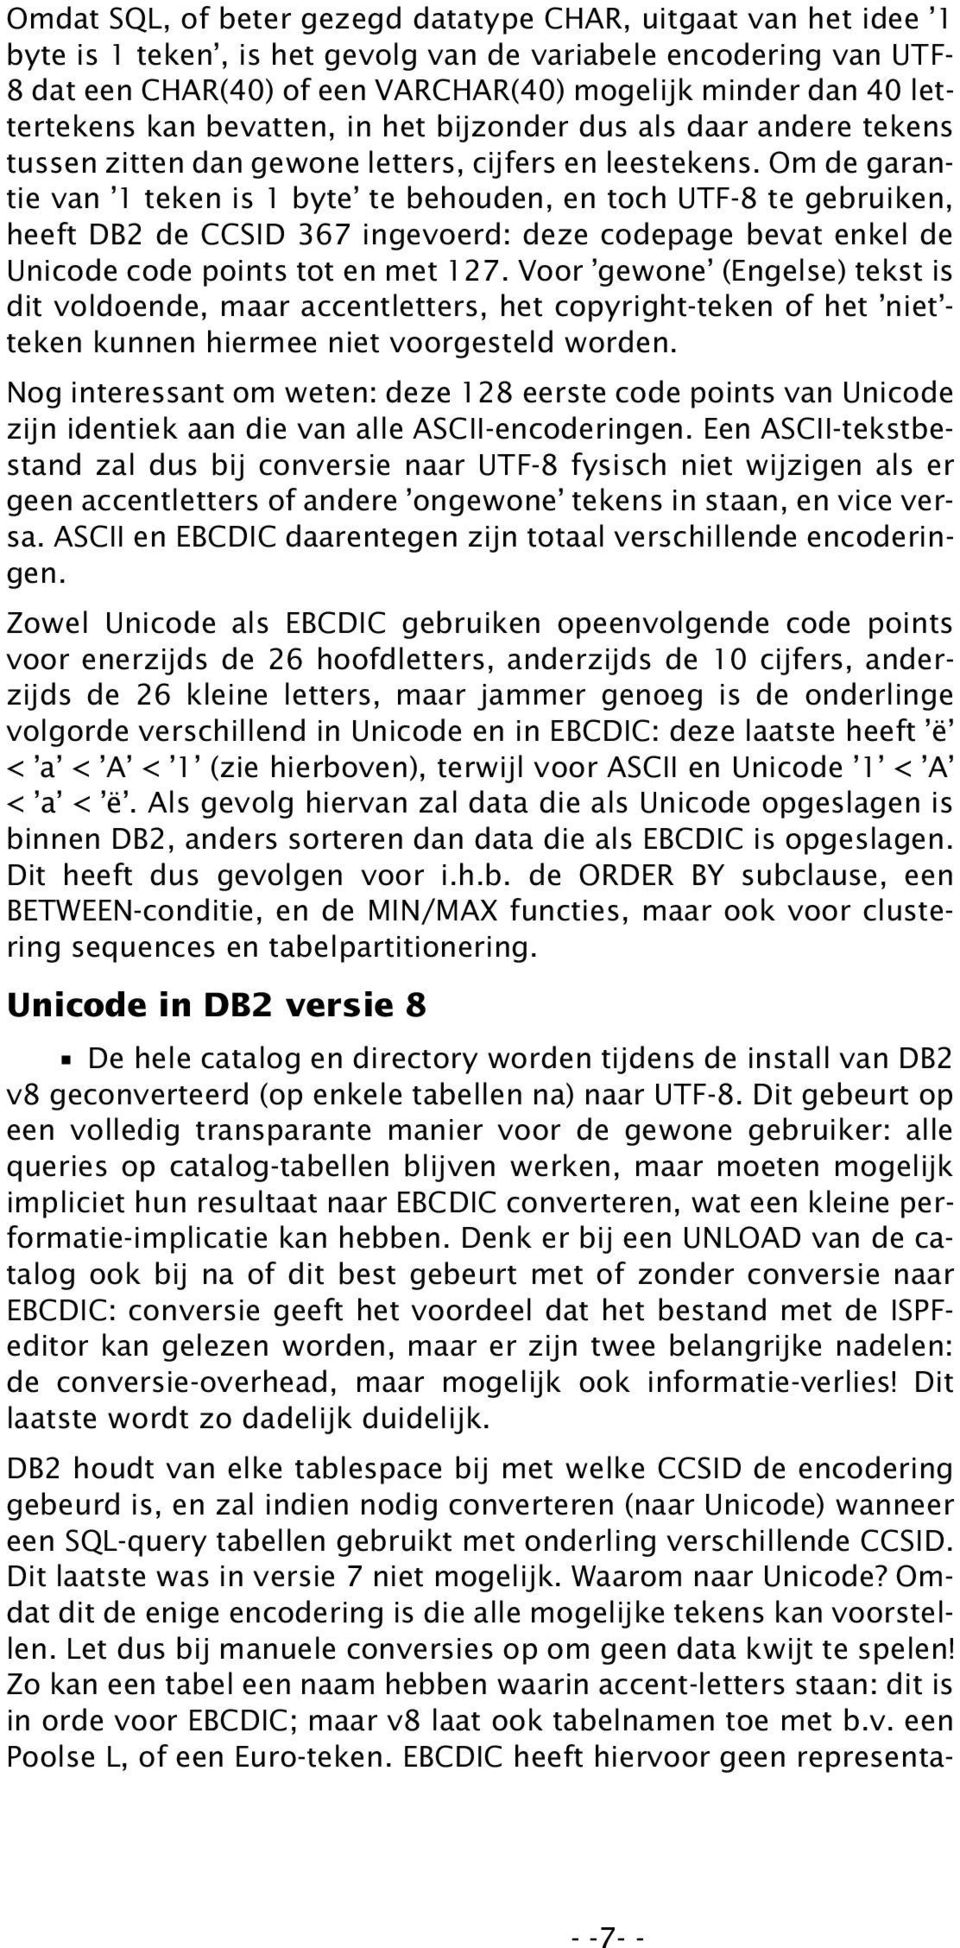 Om de garantie van 1 teken is 1 byte te behouden, en toch UTF-8 te gebruiken, heeft DB2 de CCSID 367 ingevoerd: deze codepage bevat enkel de Unicode code points tot en met 127.